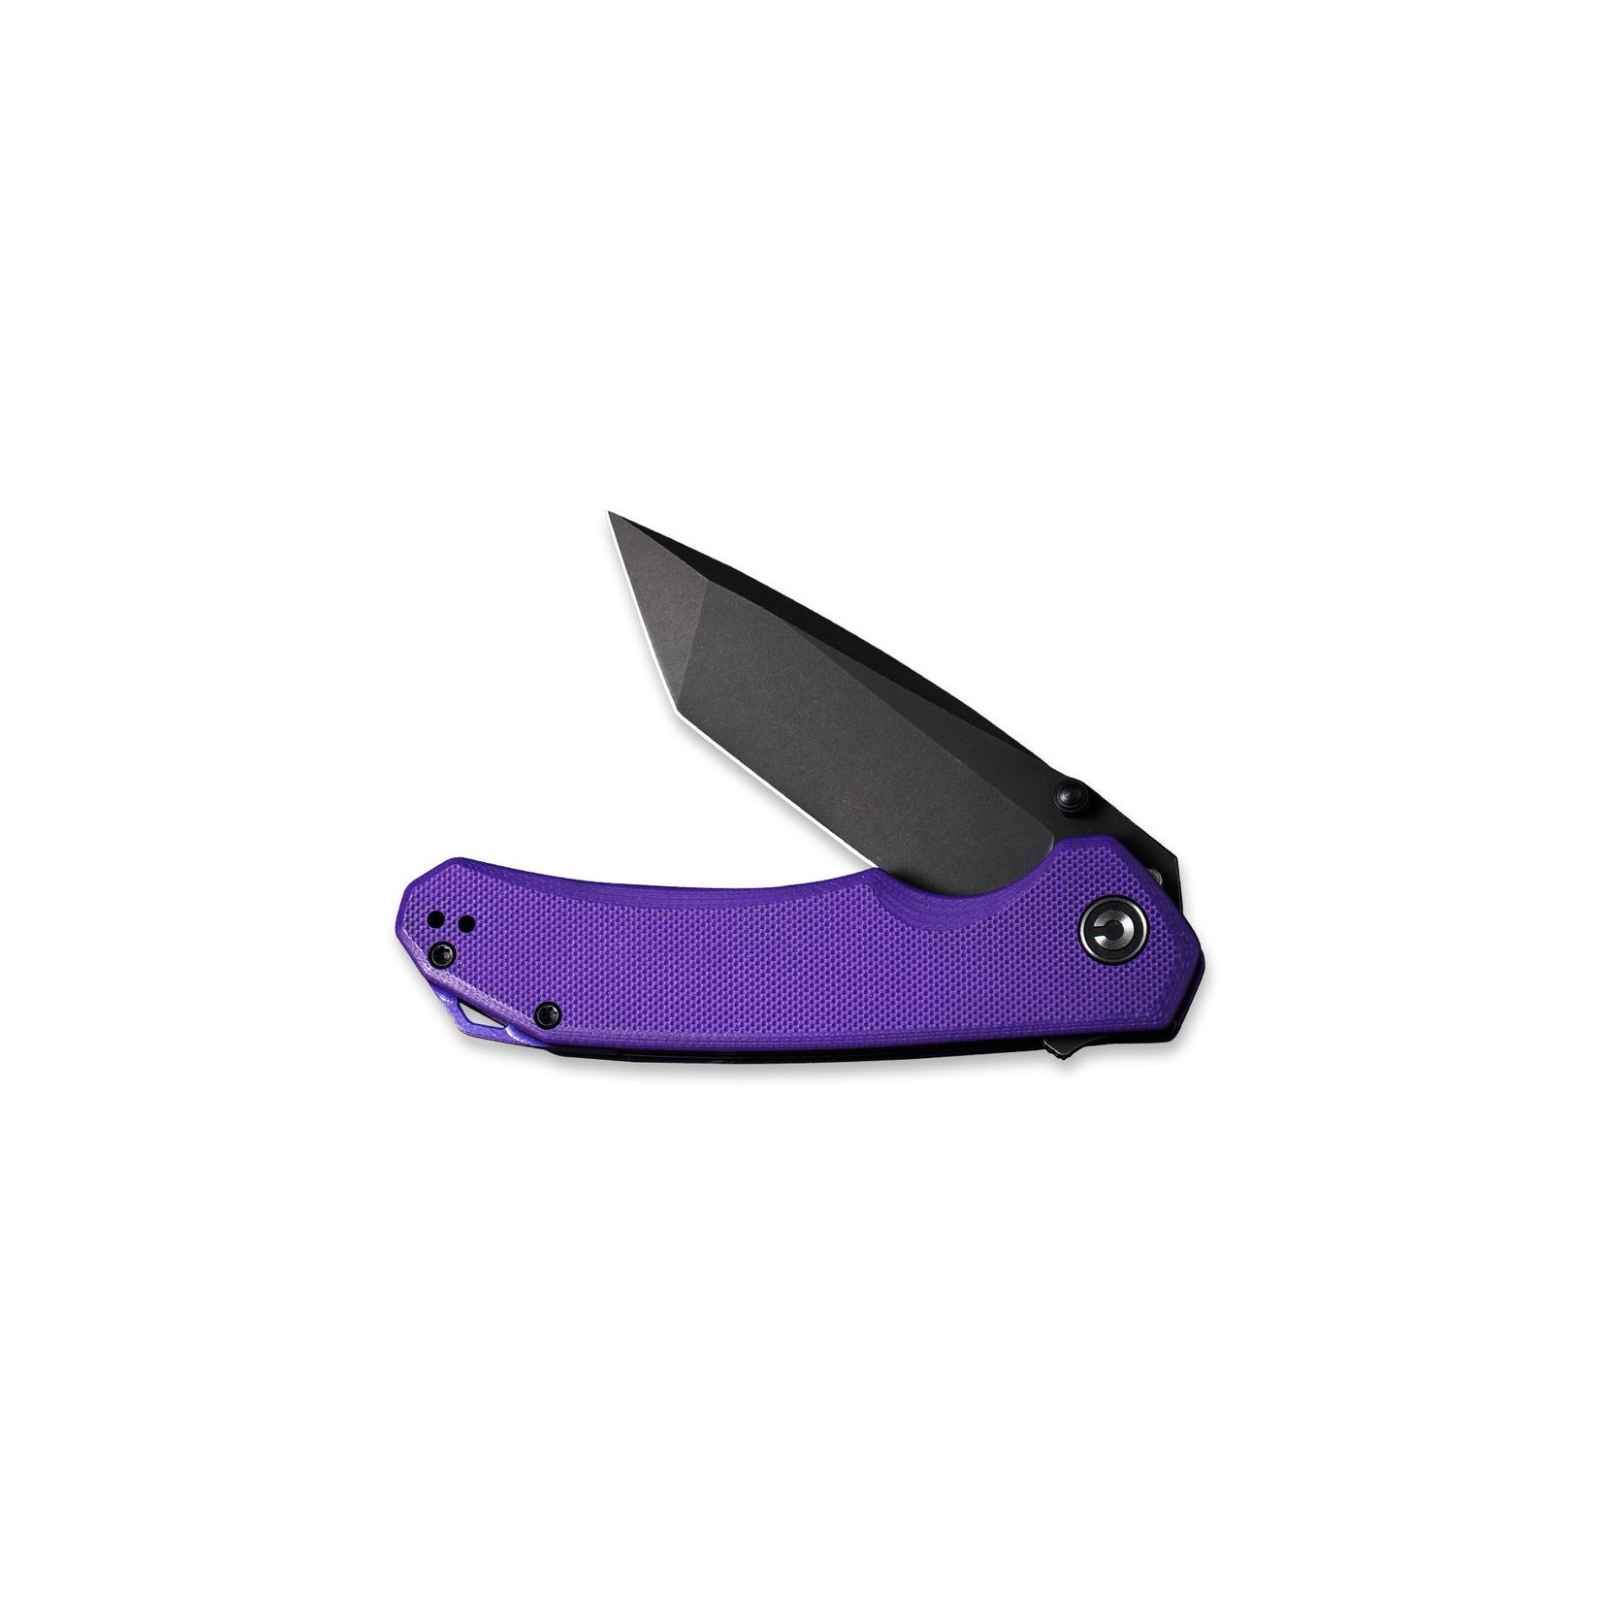 Нож Civivi Brazen Black (C2102C) изображение 4